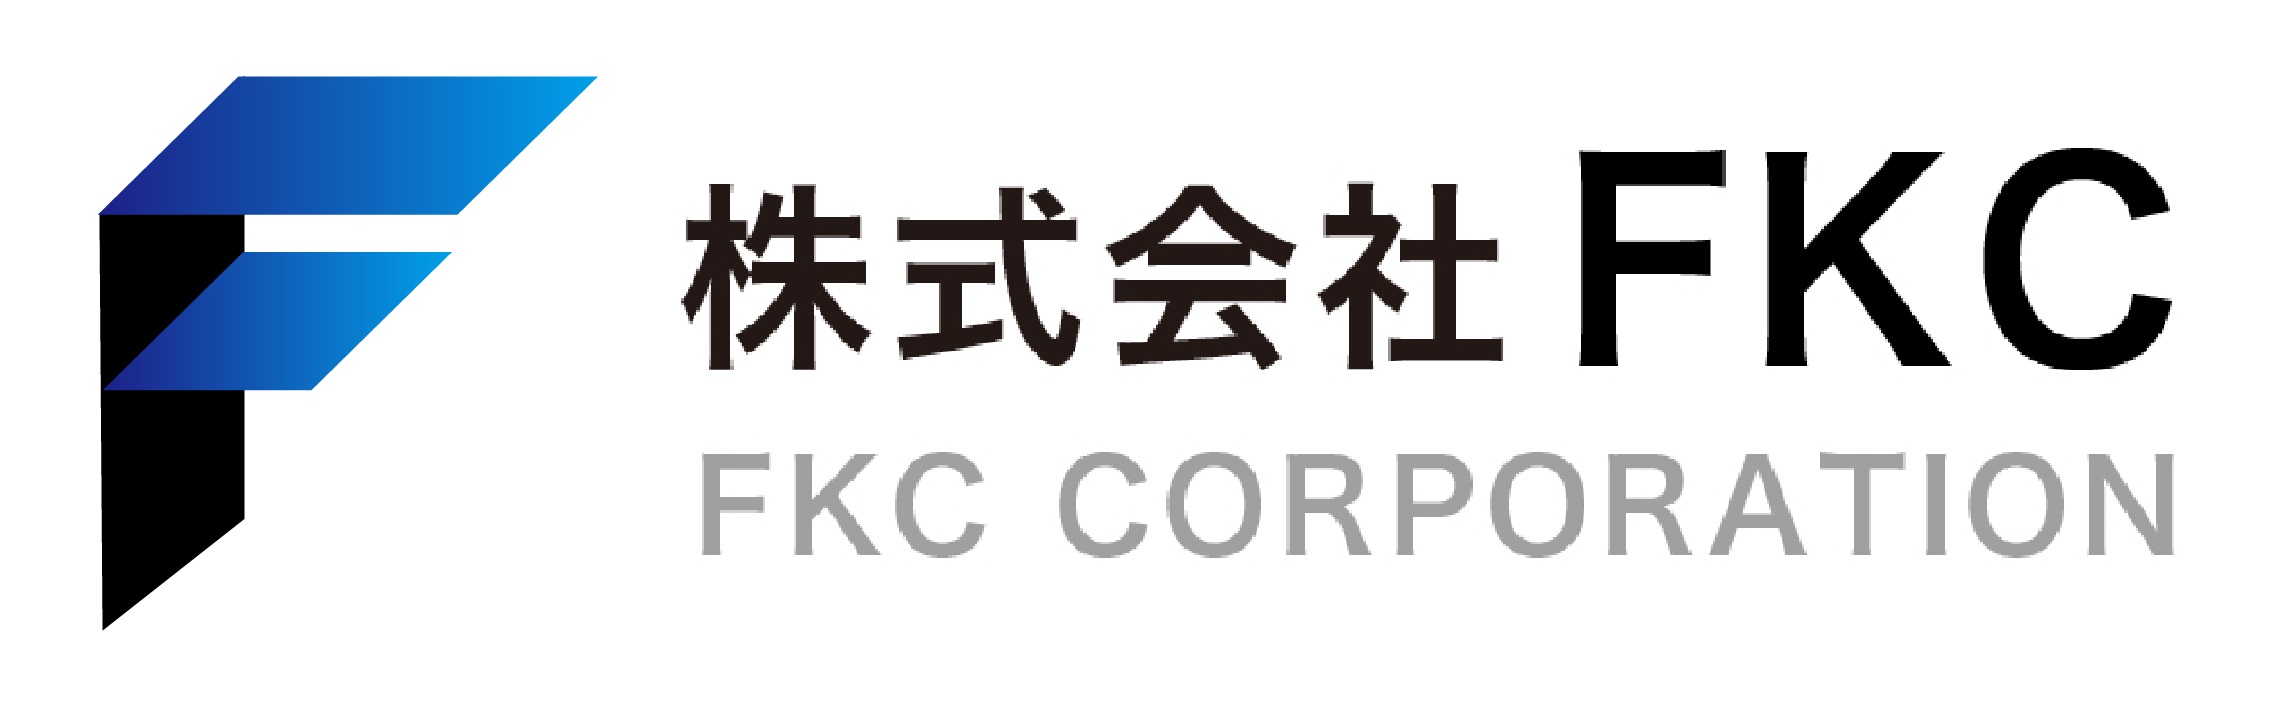 株式会社FKC